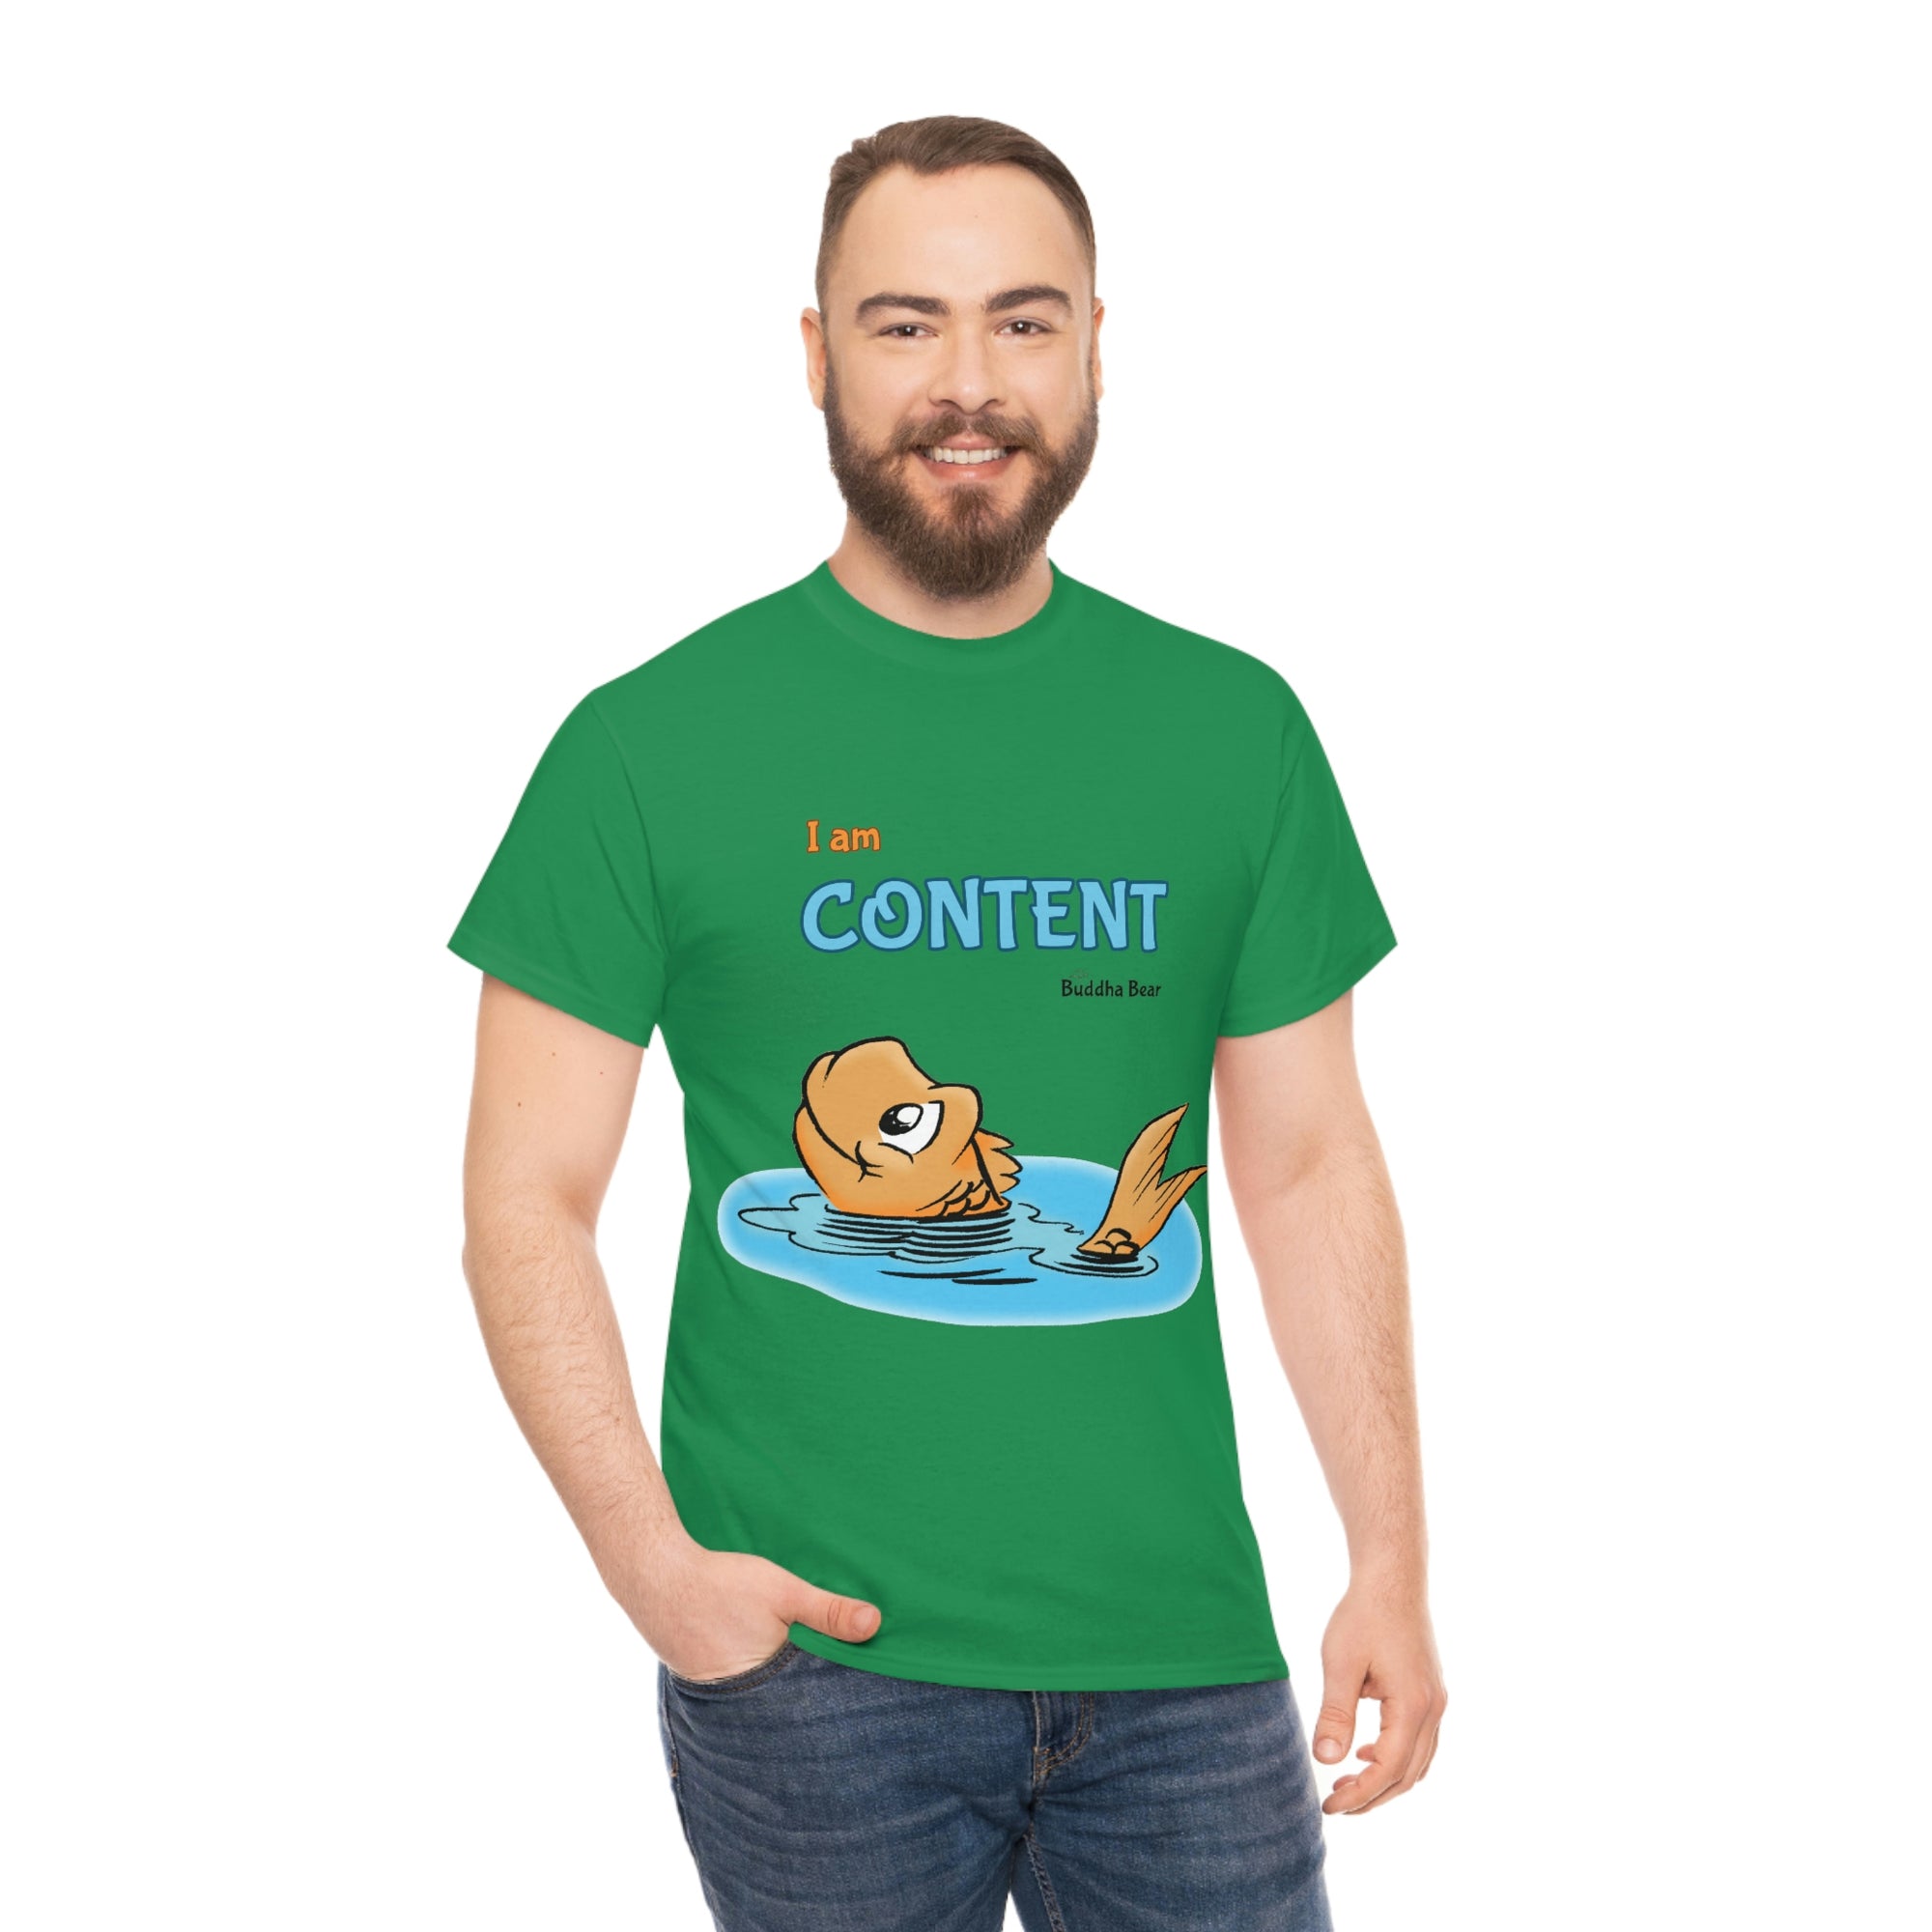 I am Content - Unisex T-shirt